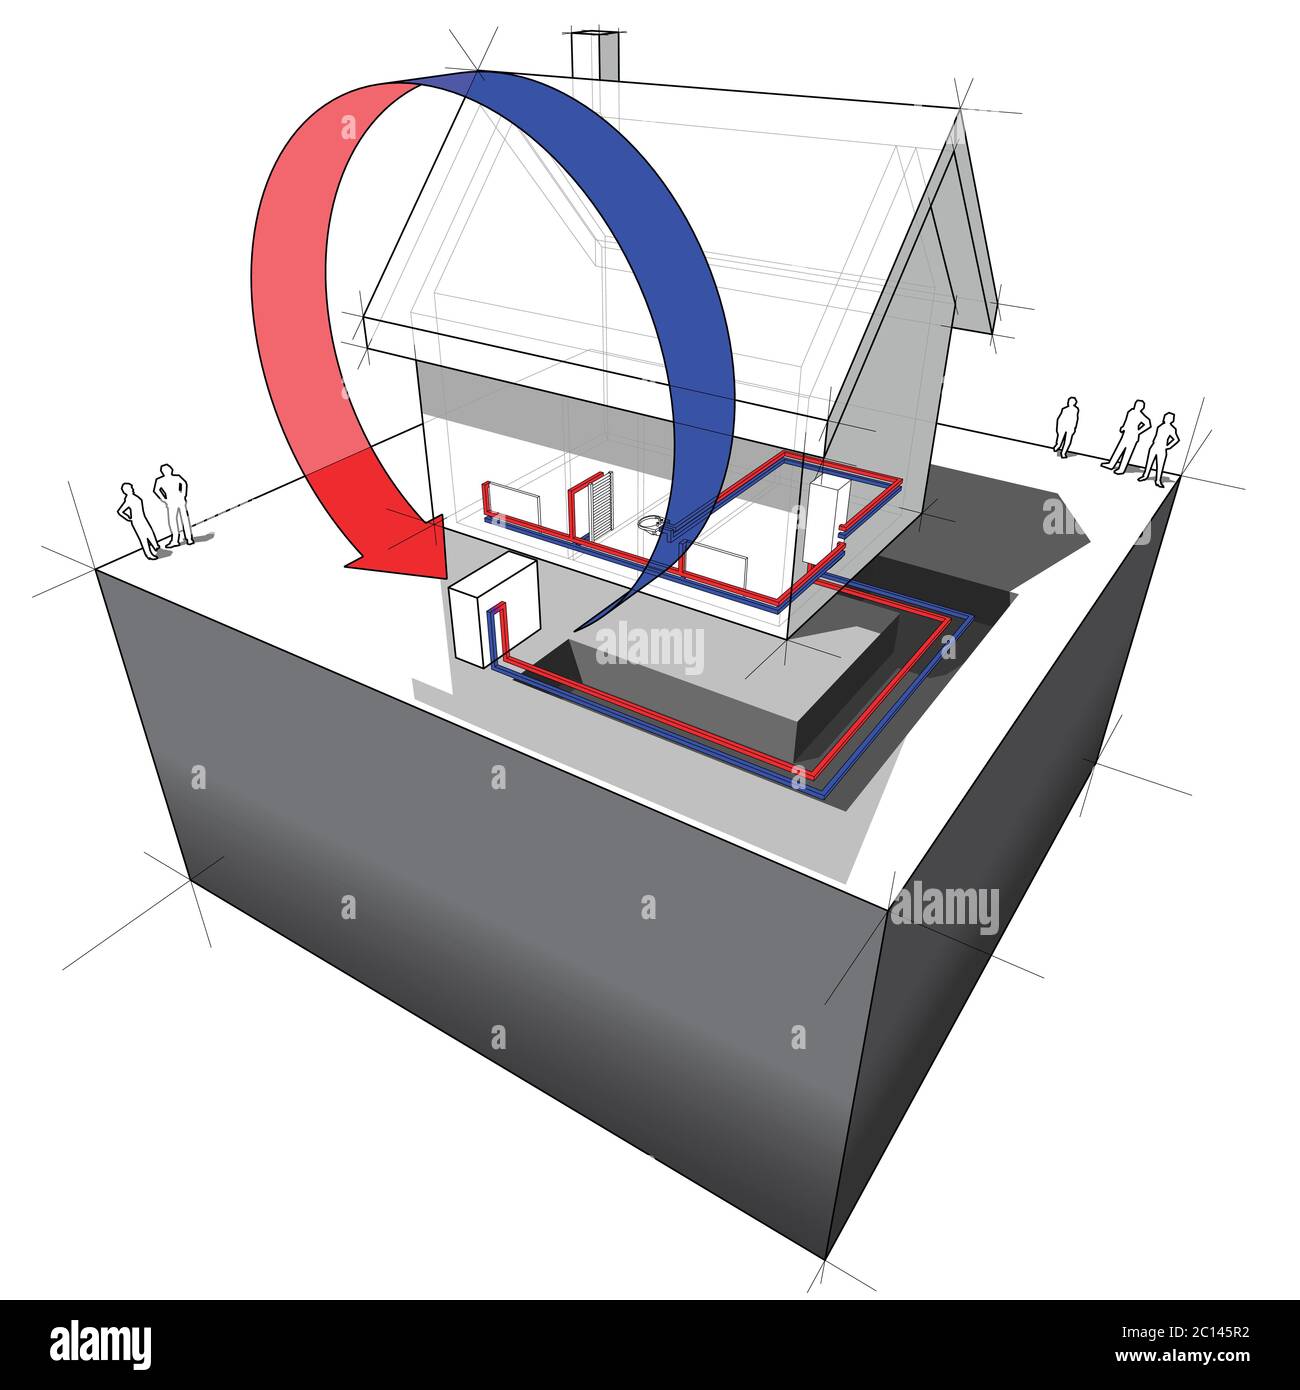 illustrazione 3d di una semplice casa indipendente con diagramma della pompa di calore della sorgente d'aria come fonte di energia per il riscaldamento Illustrazione Vettoriale